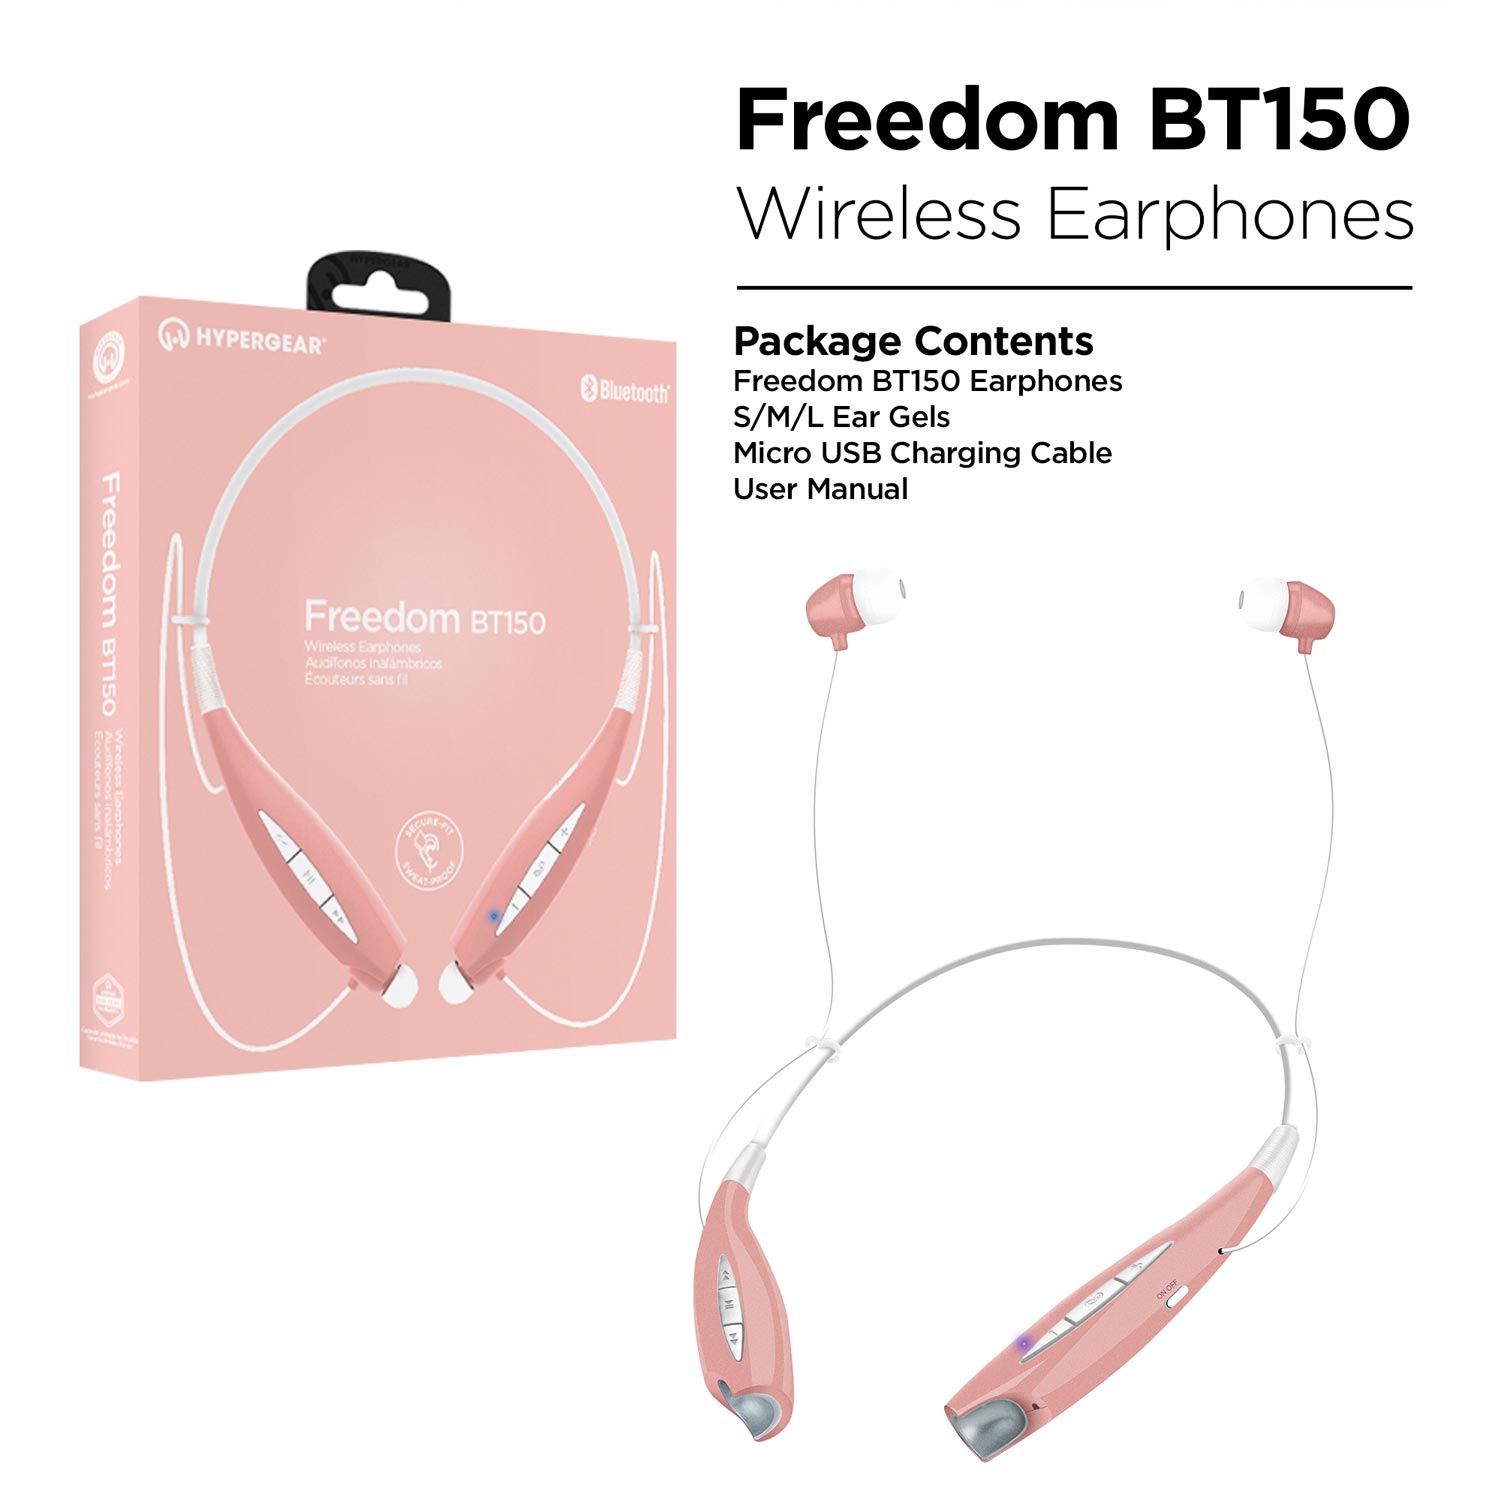 Freedom BT150 Wireless Earphones